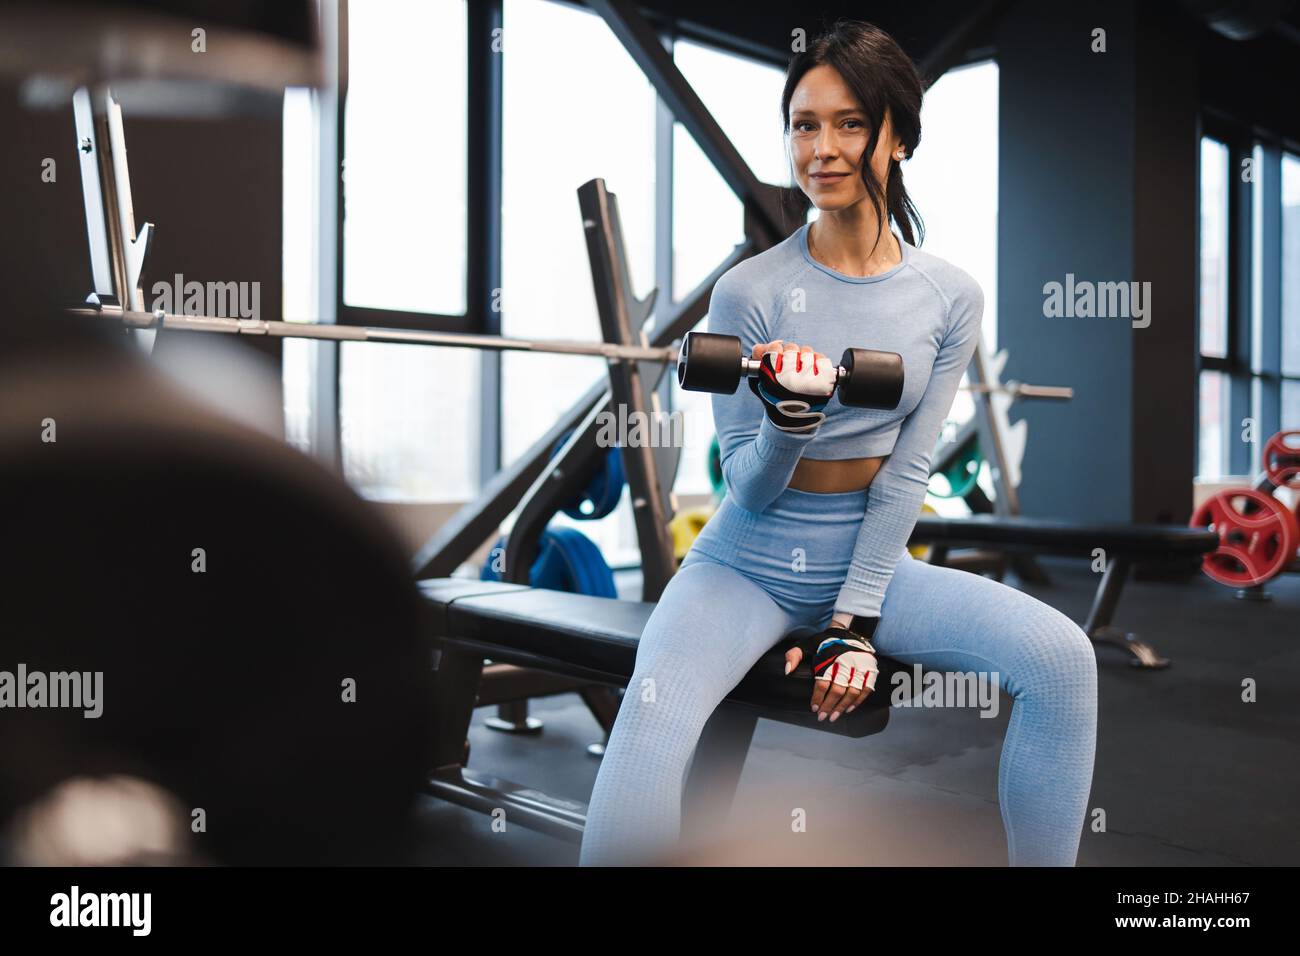 Une femme secoue des biceps levant une haltère tout en étant assise sur un banc dans la salle de gym Banque D'Images